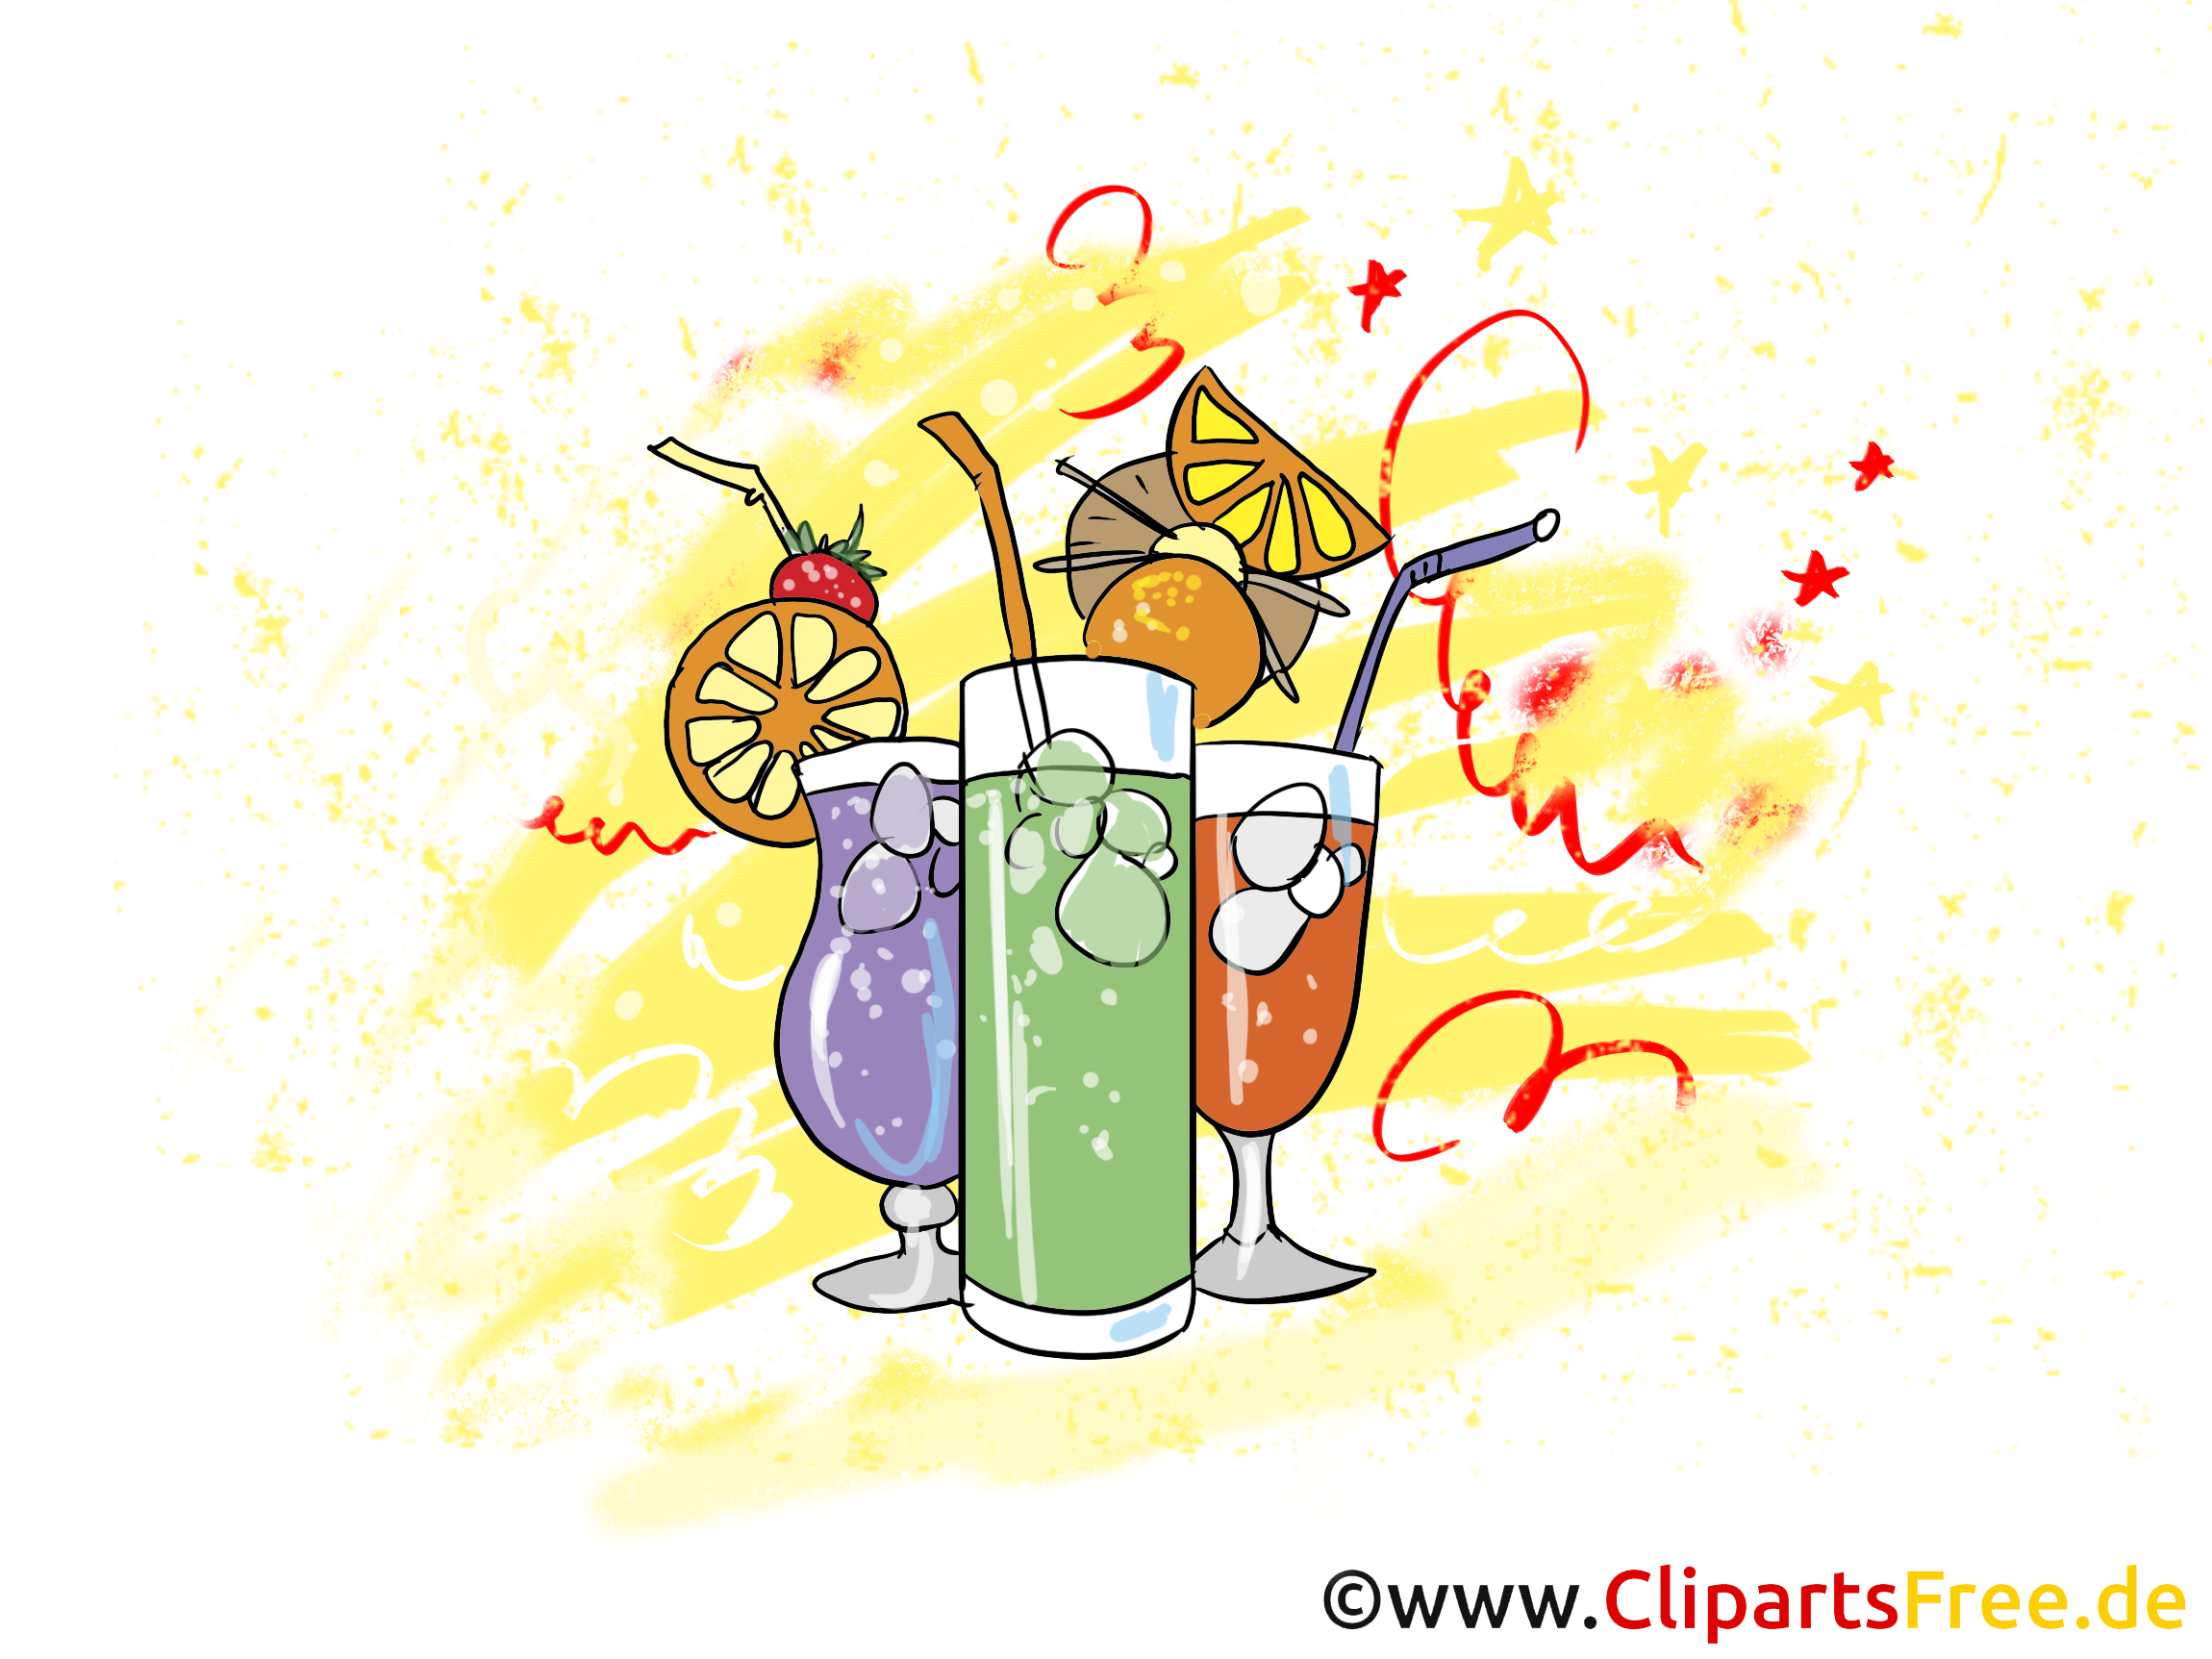 Cocktails dessin gratuit - Soirée clip arts